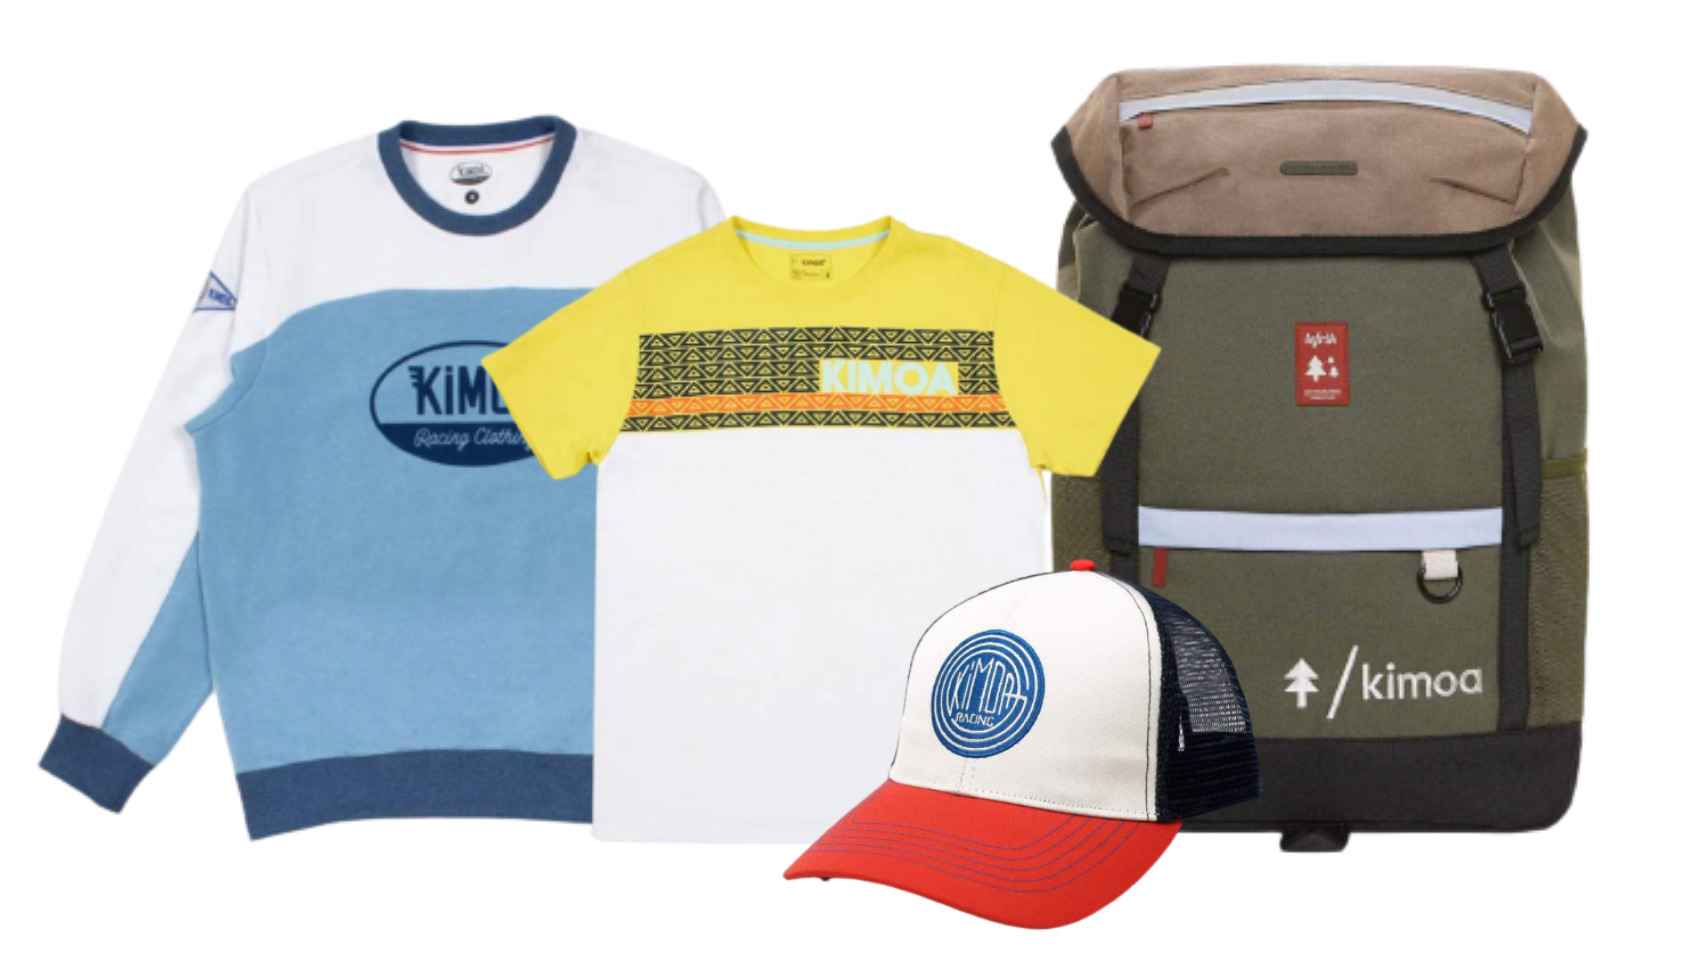 La marca Kimoa y Fernando Alonso apuestan por la moda sostenible con estos productos